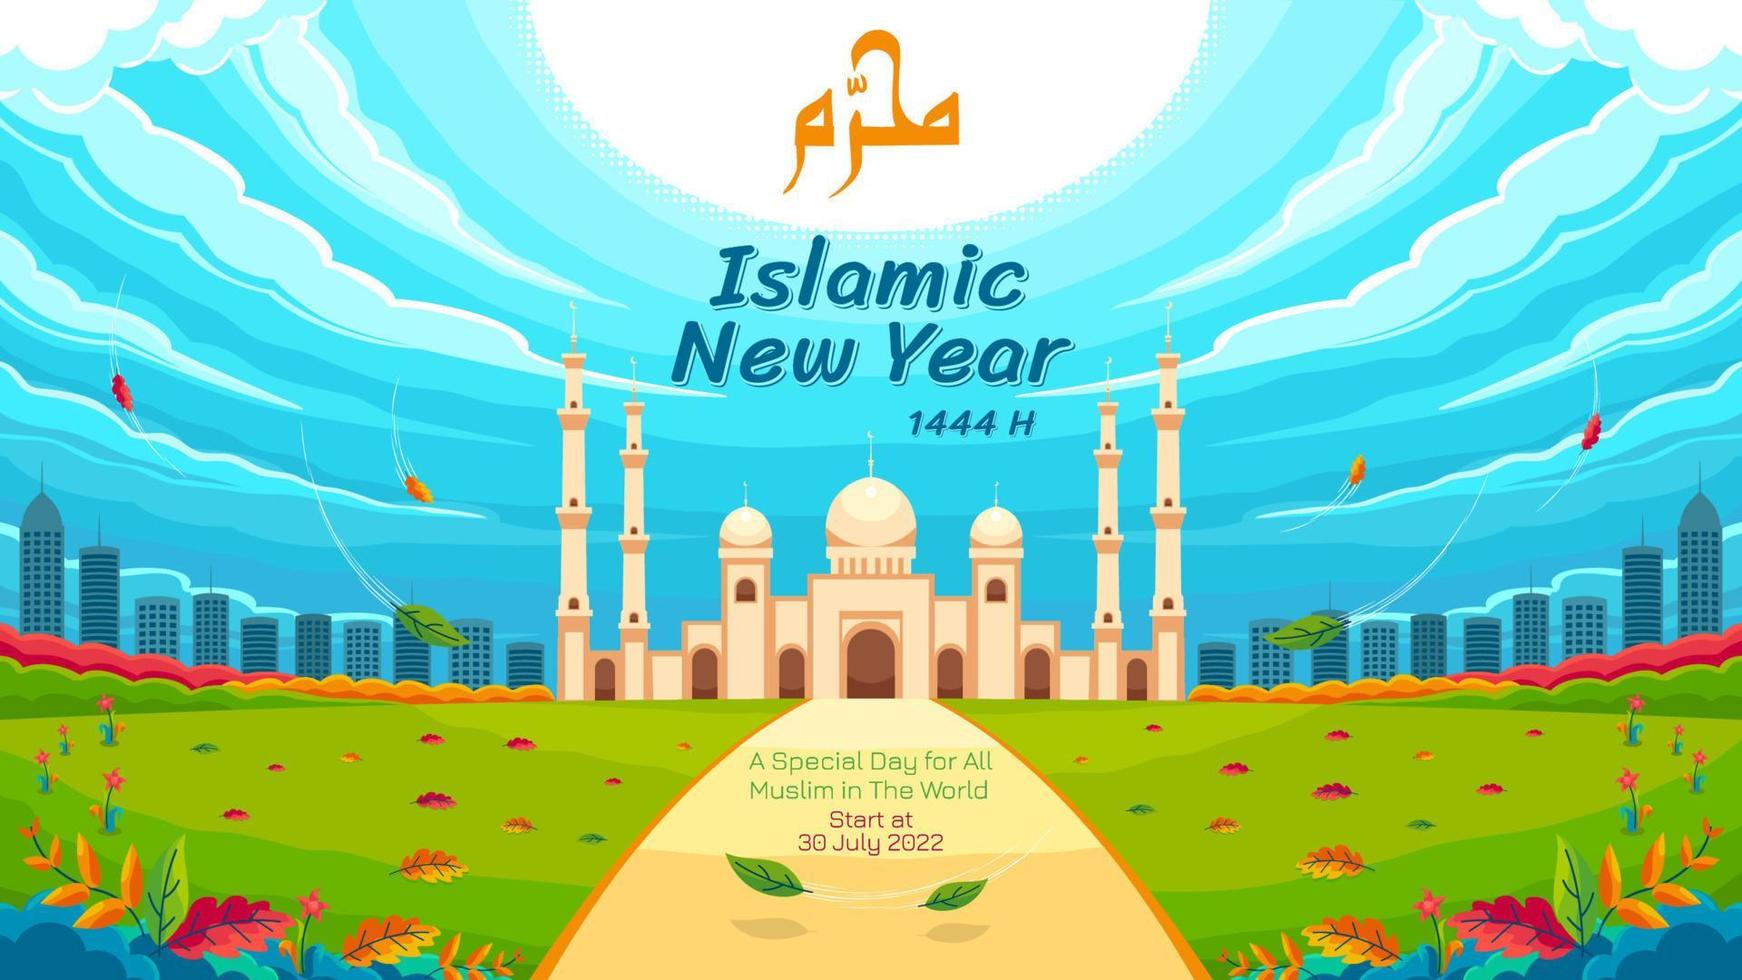 cielos despejados, con almas tranquilas en el nuevo año islámico vector